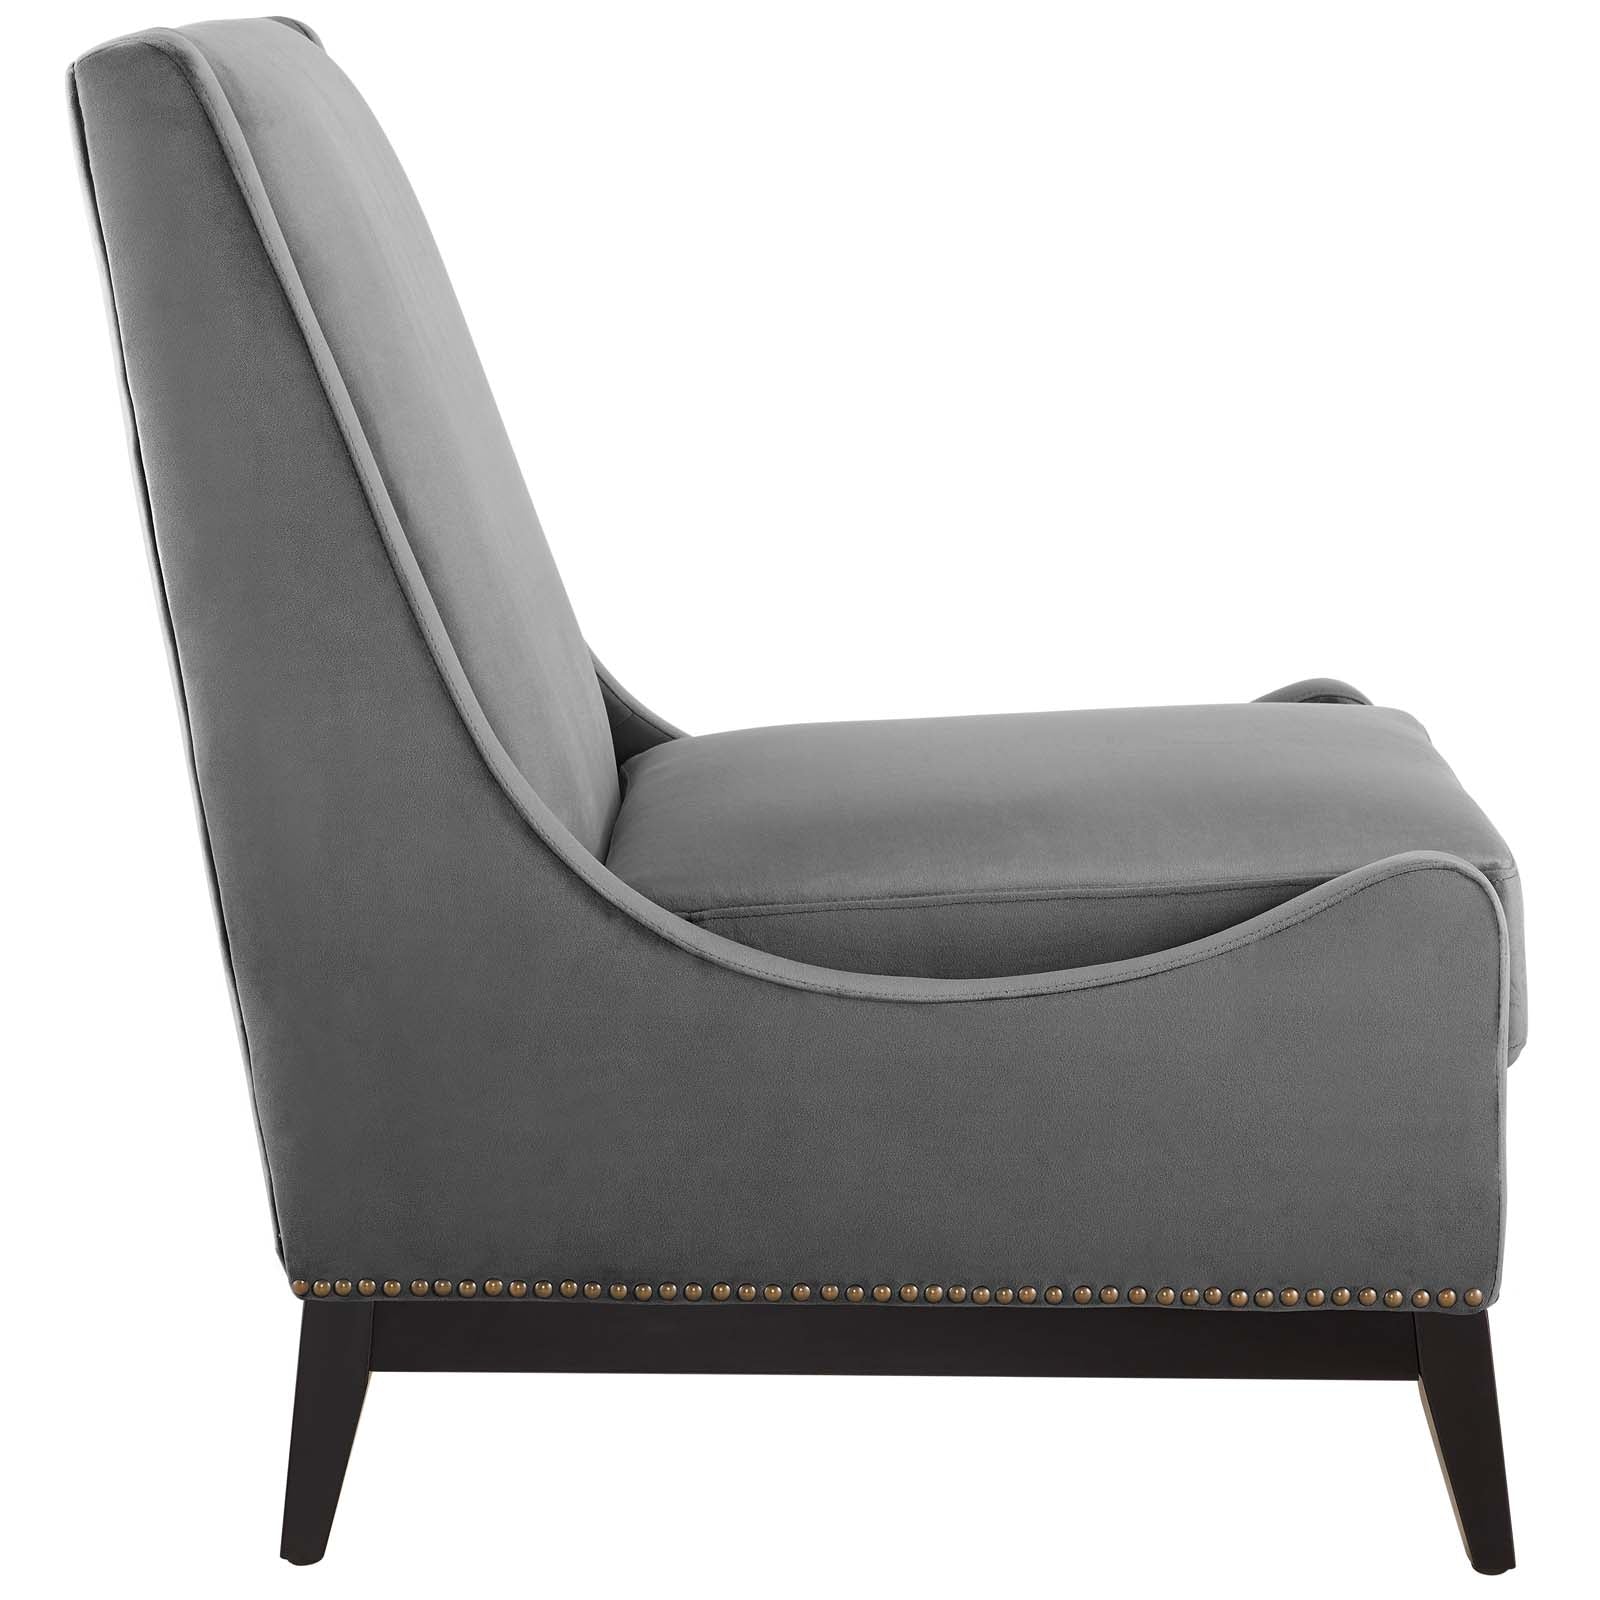 Confident Lounge Chair Upholstered Performance Velvet Set of 2 - East Shore Modern Home Furnishings